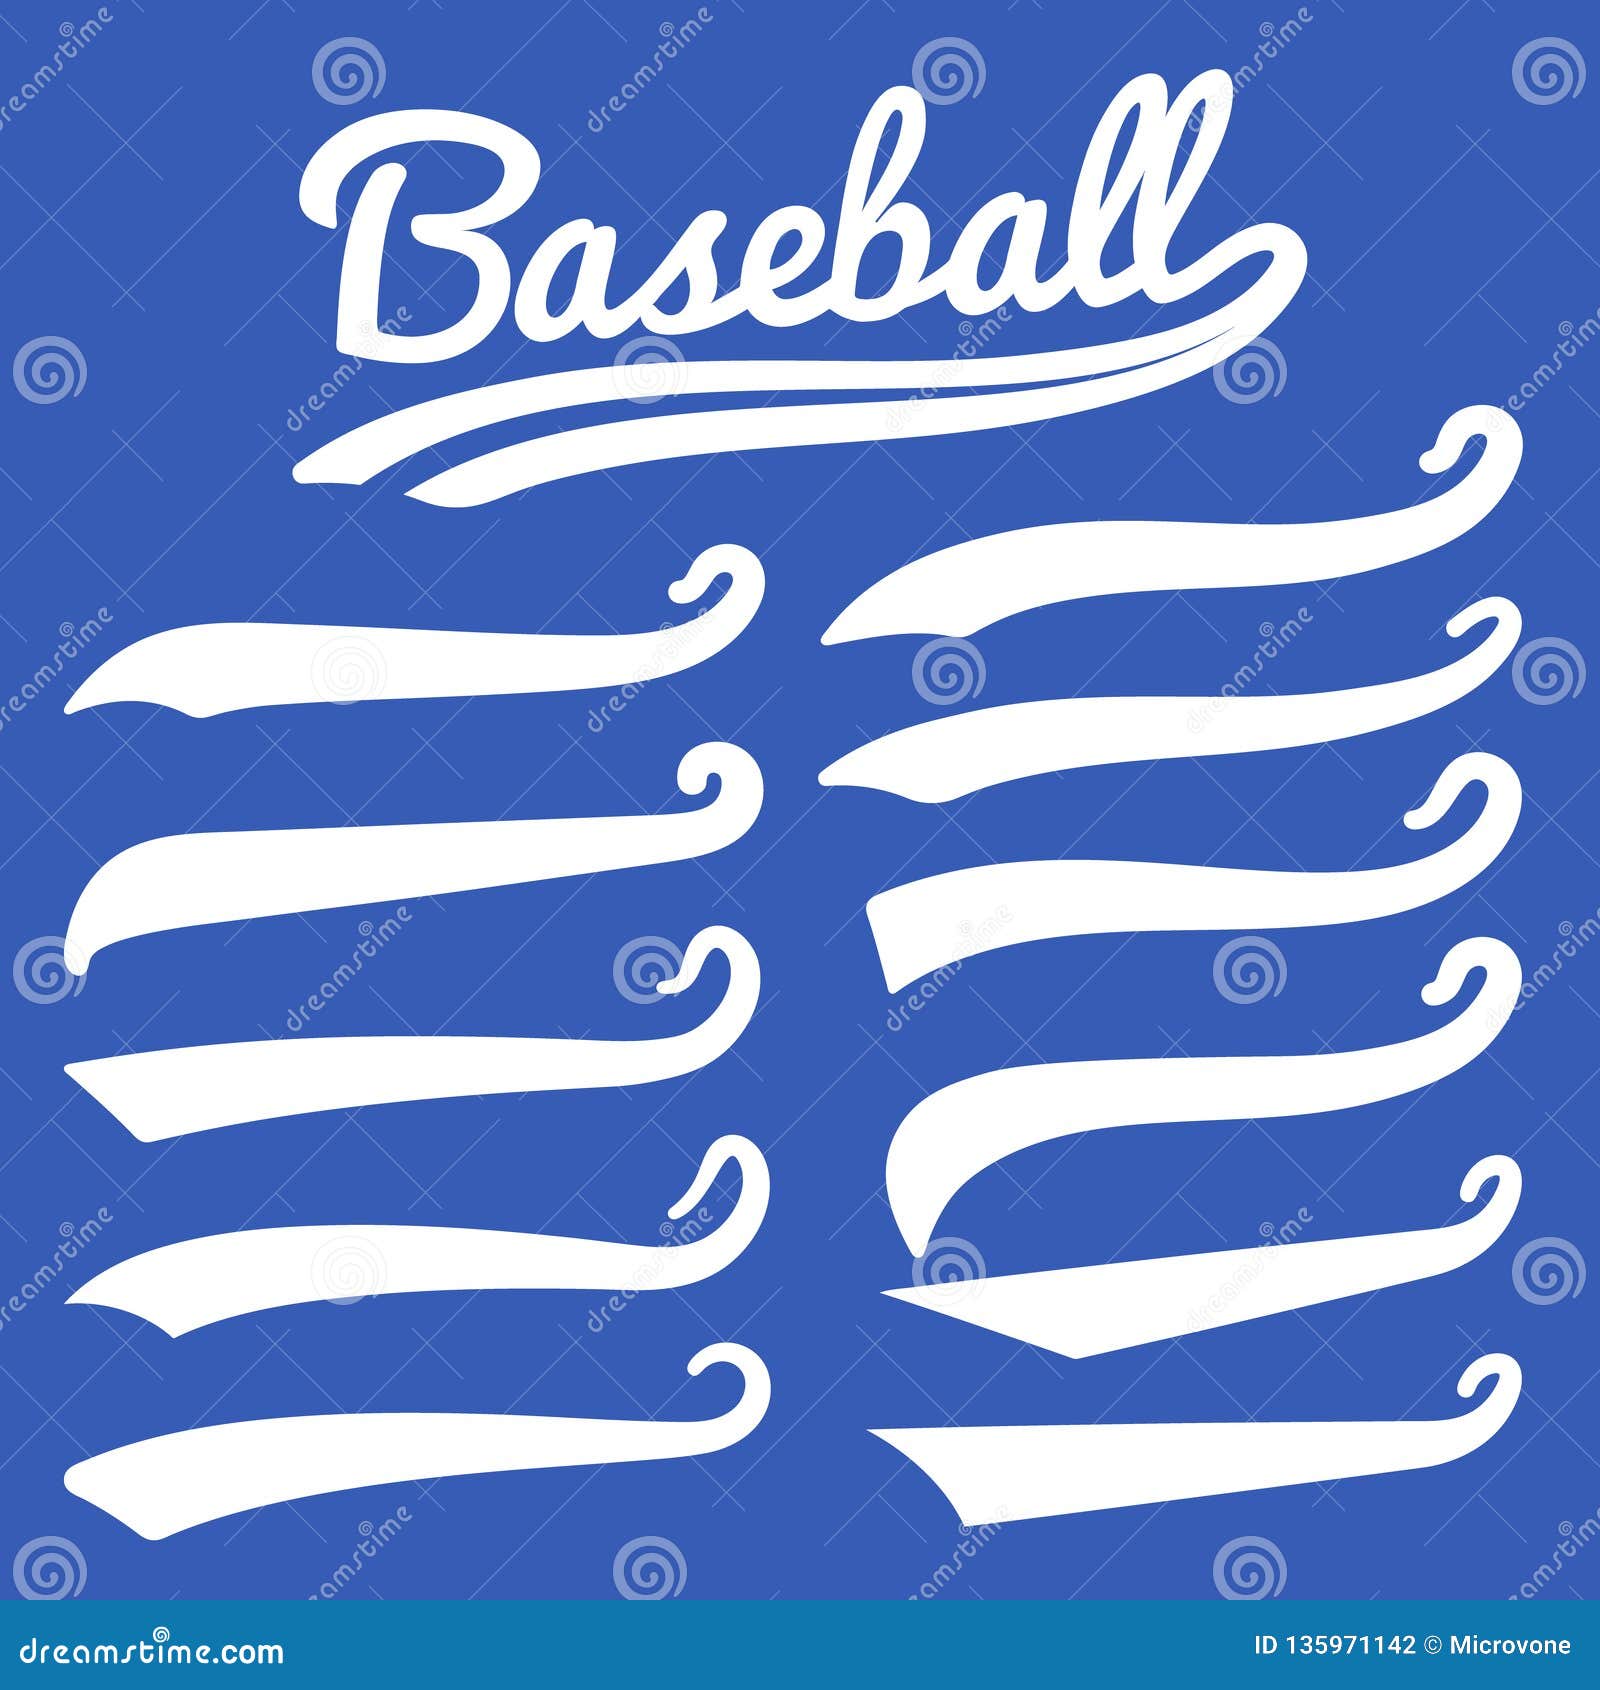 swash and swoosh. vintage swashes baseball typography swirl tails. retro style  set